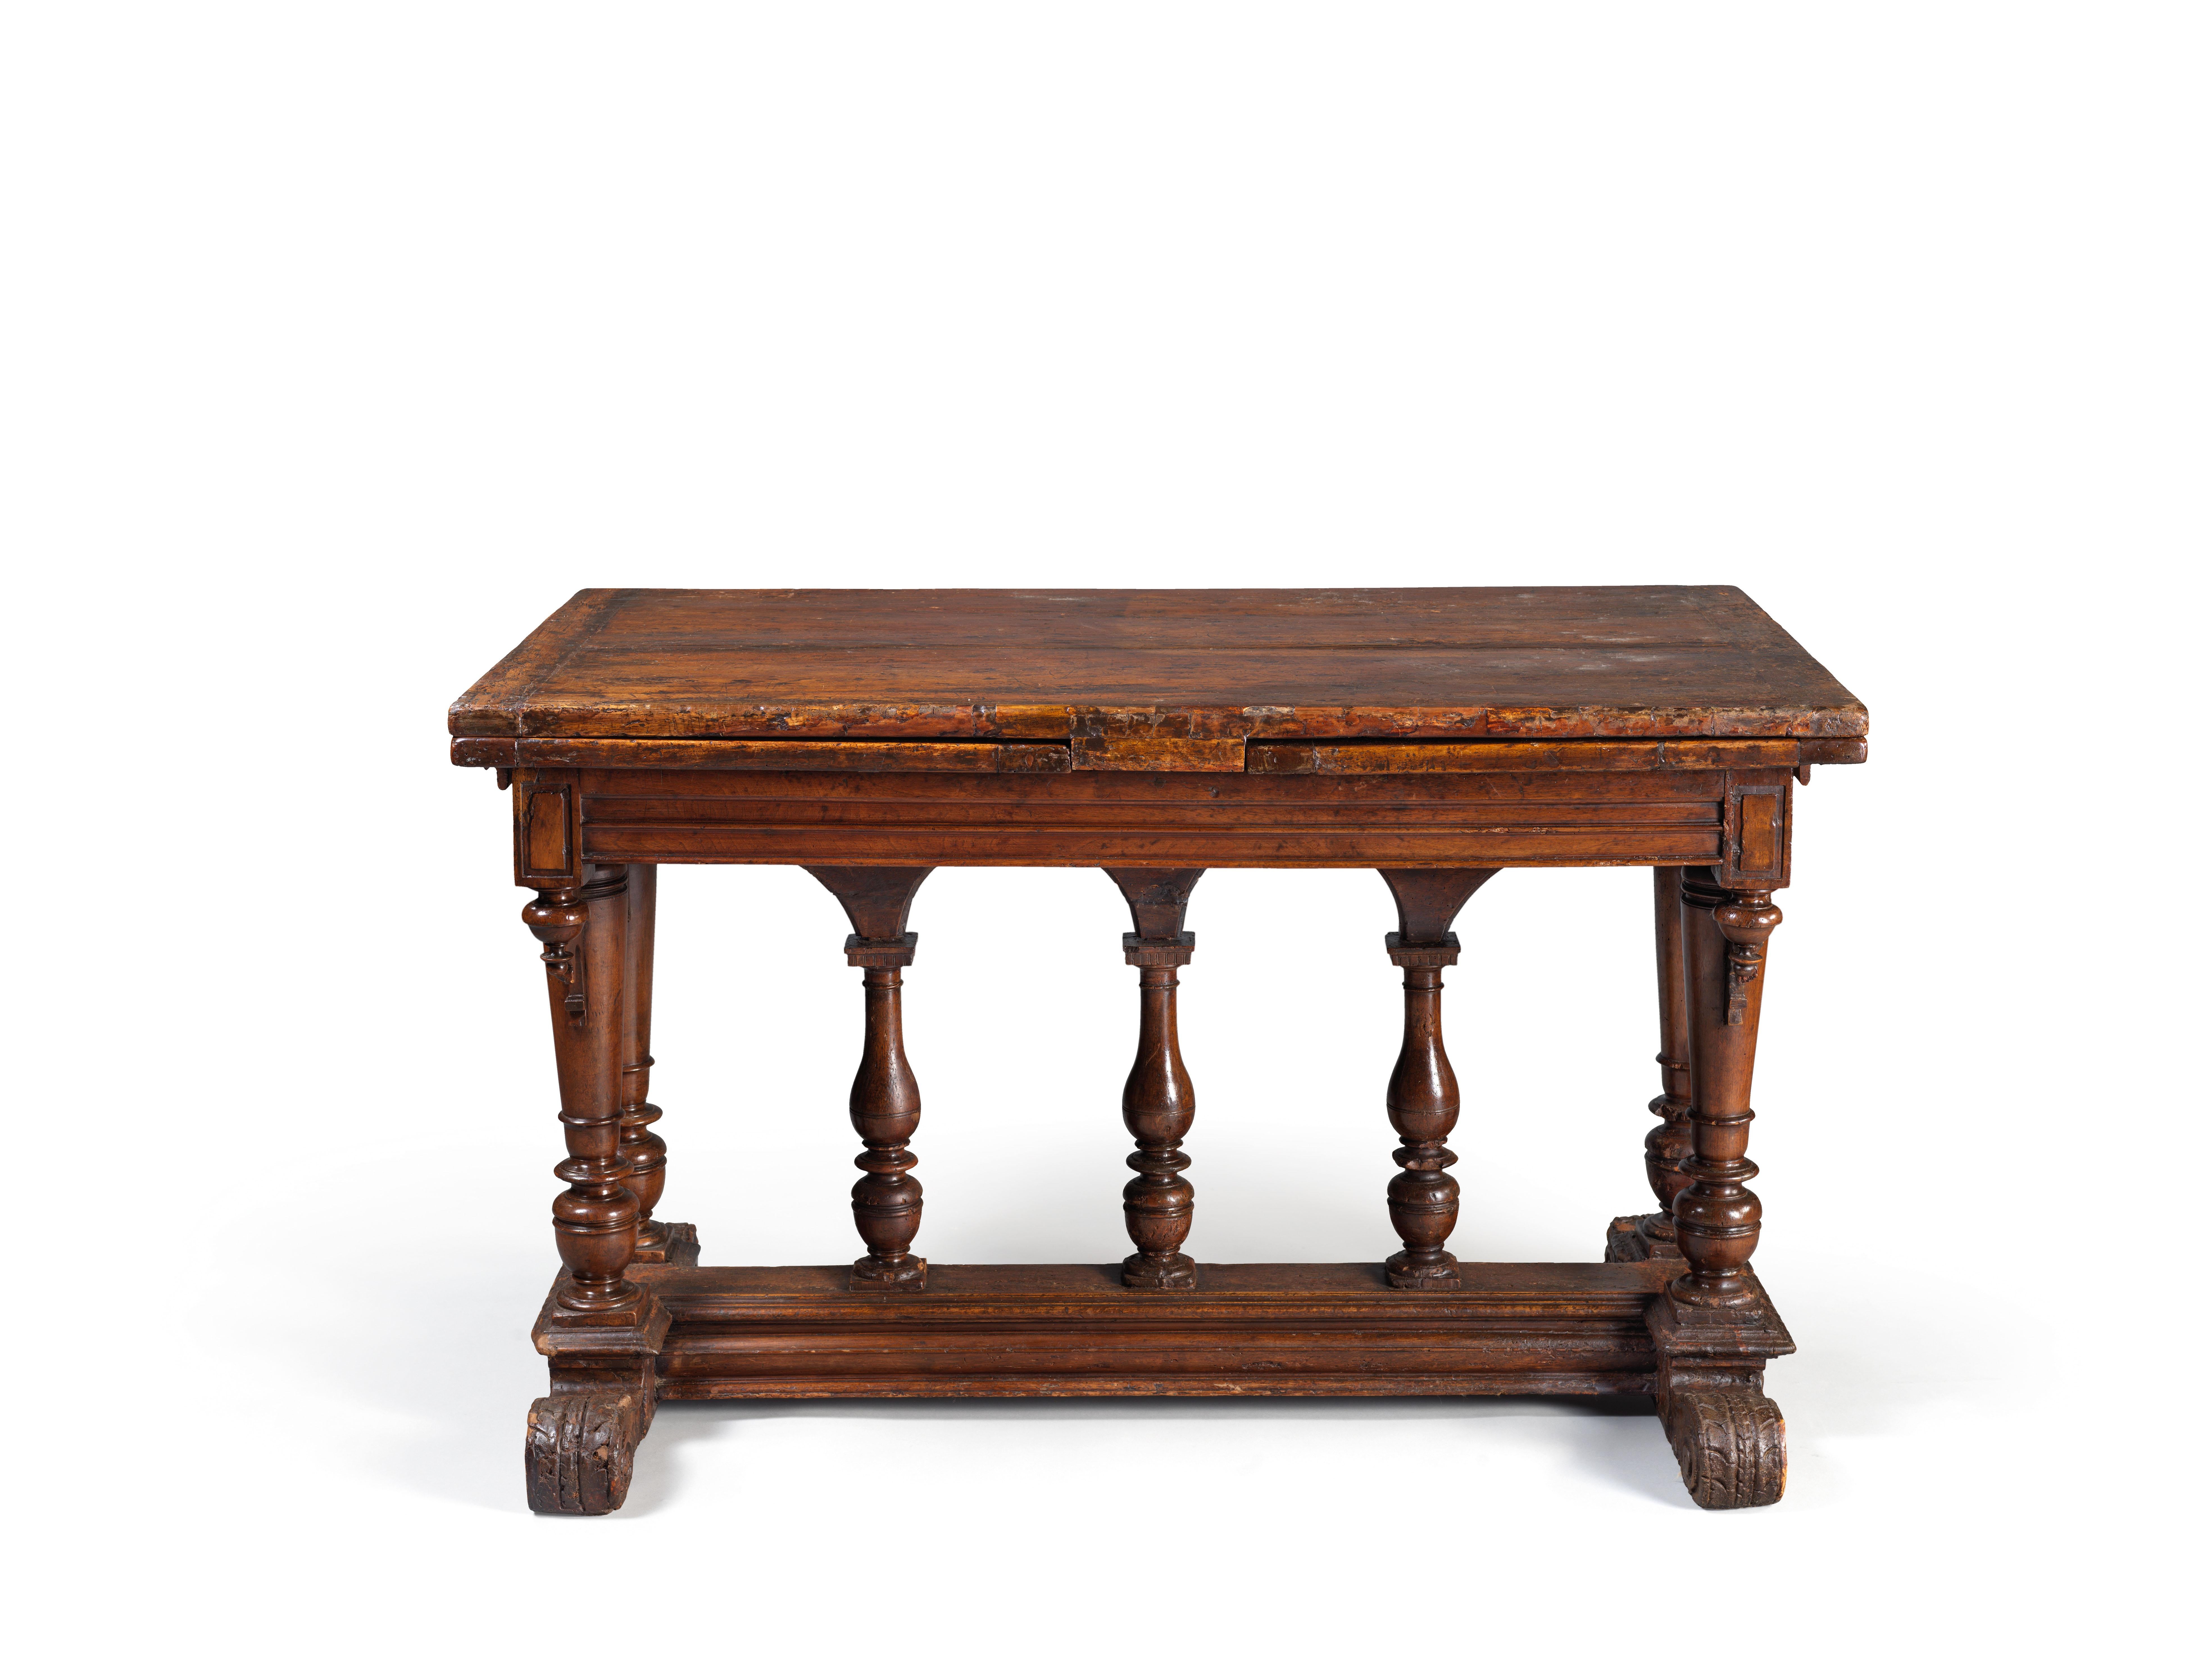 Maße: Länge geschlossen: 137 cm - Länge geöffnet: 255 cm

Schöner Tisch aus der zweiten französischen Renaissance, 